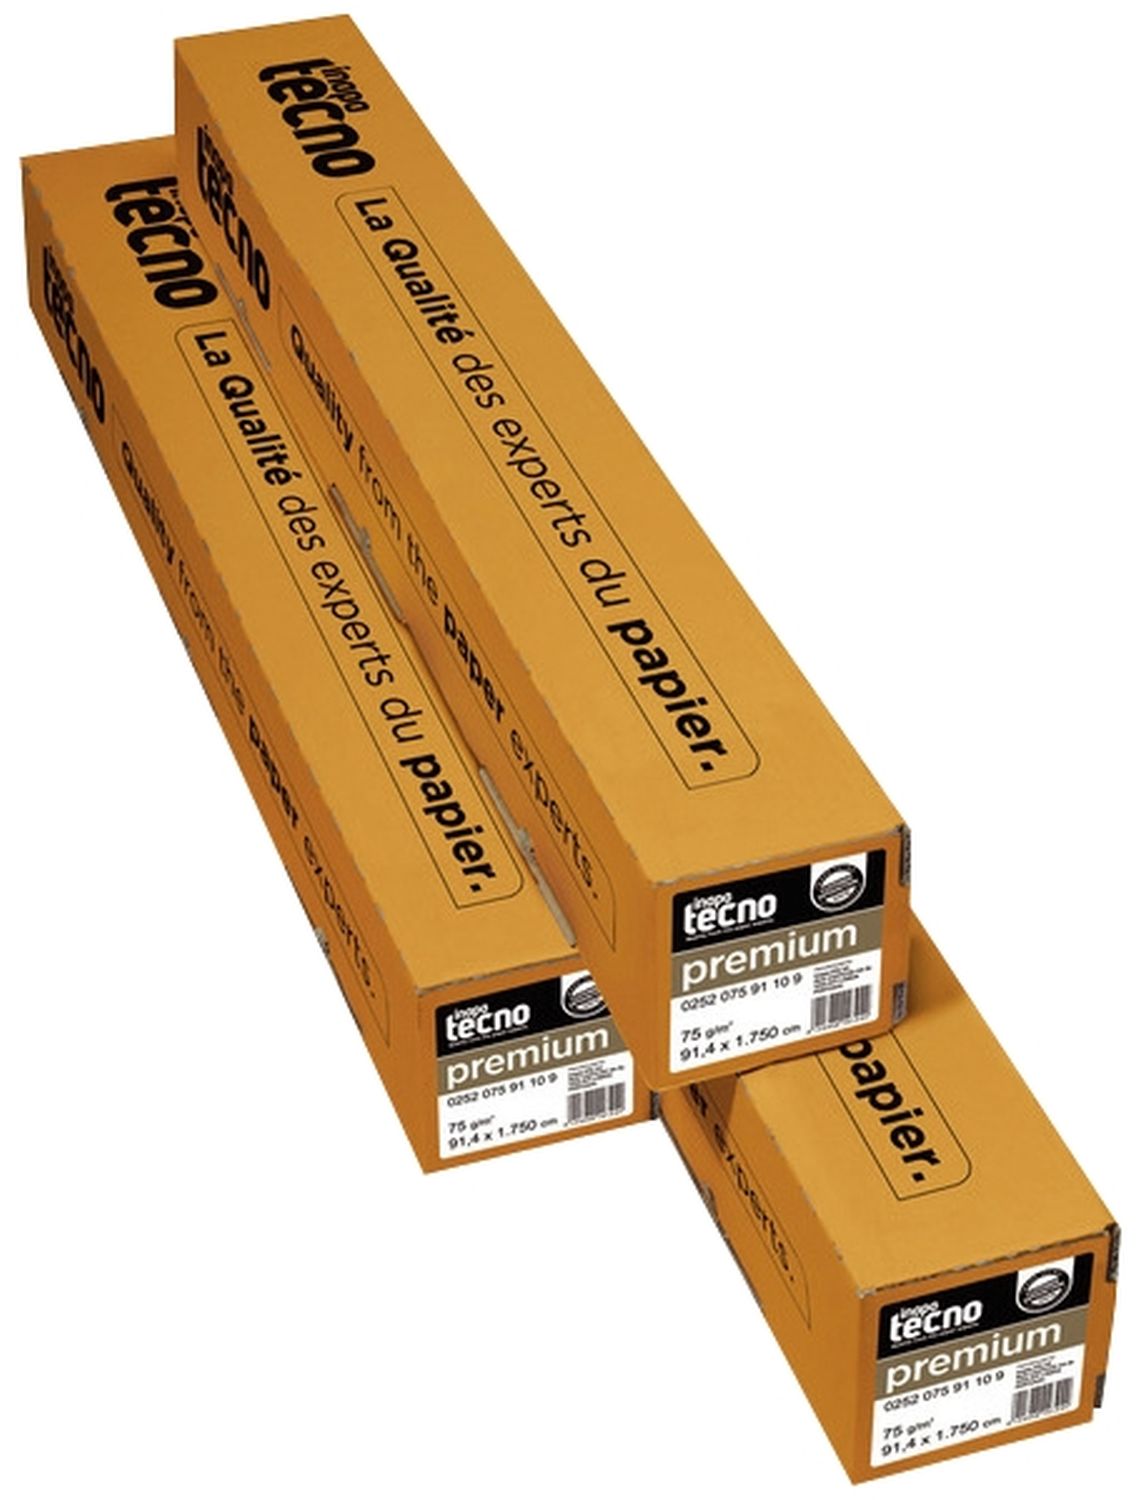 Plotterpapier tecno premium 4100000156 für Großformatdruck, 297 mm x 175 m (A4), 75 g/qm, Kern-Ø 7,50 cm, 2 Rollen